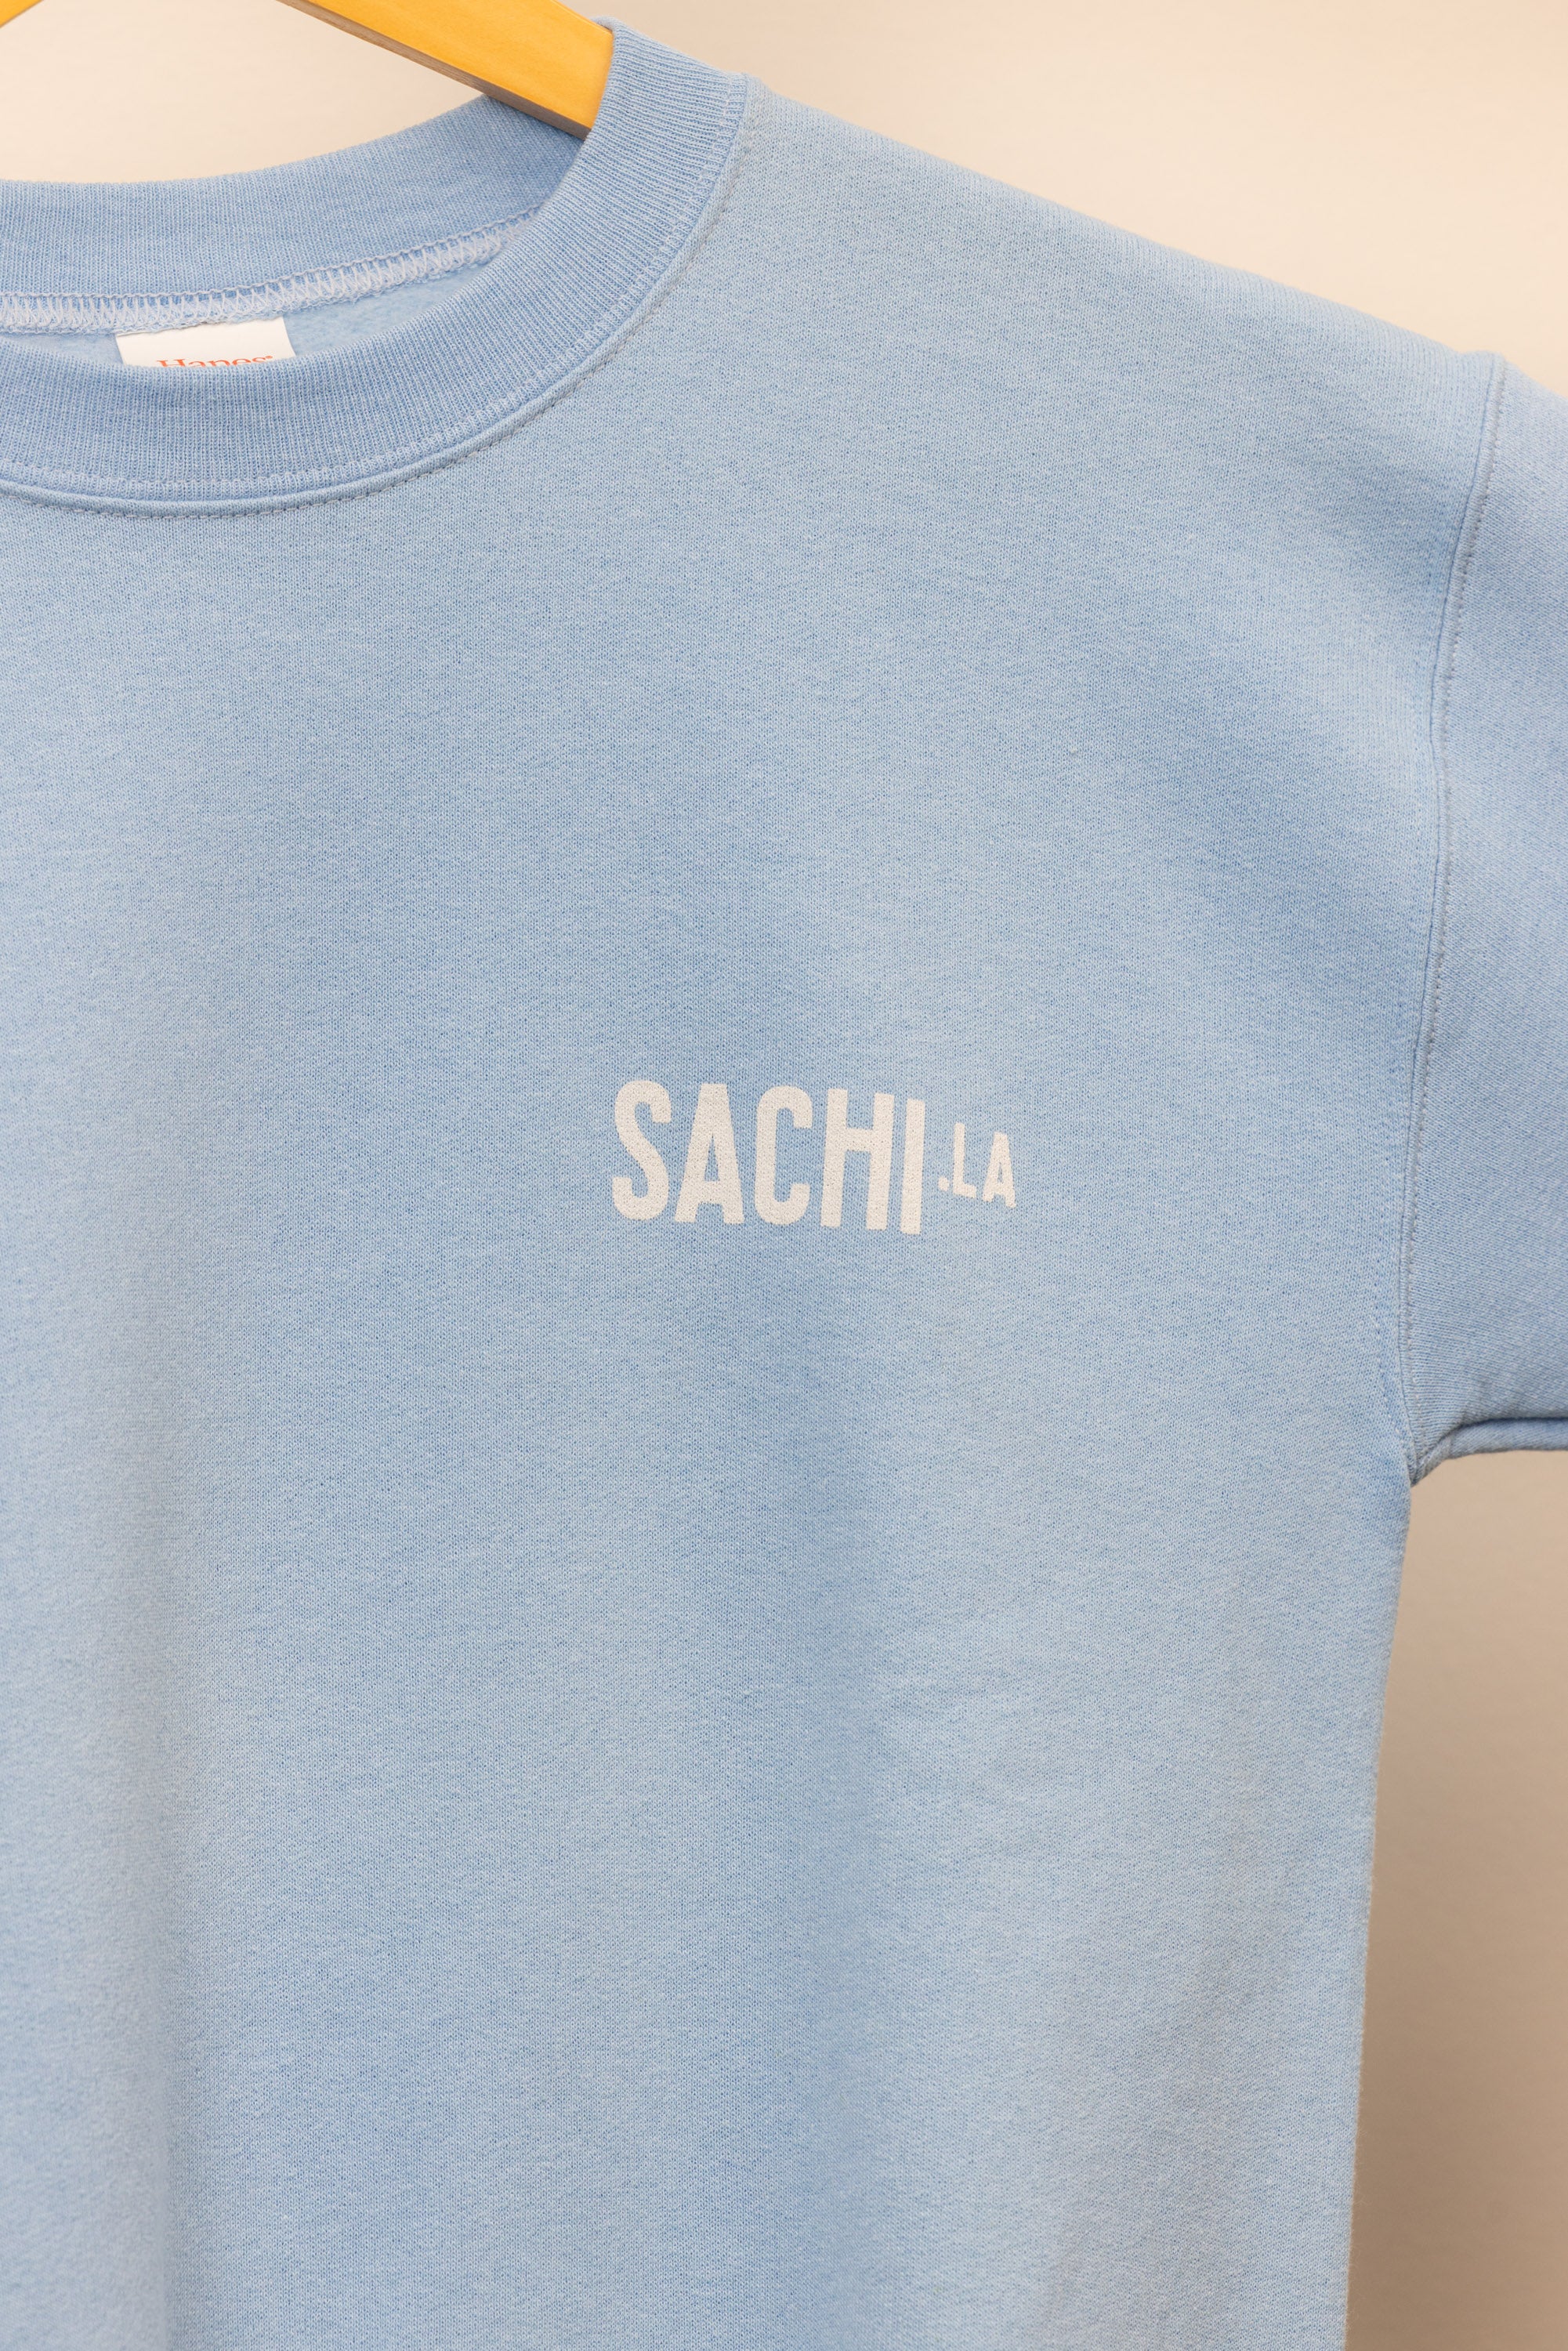 SACHI.LA Kid's Crewneck Sweatshirt